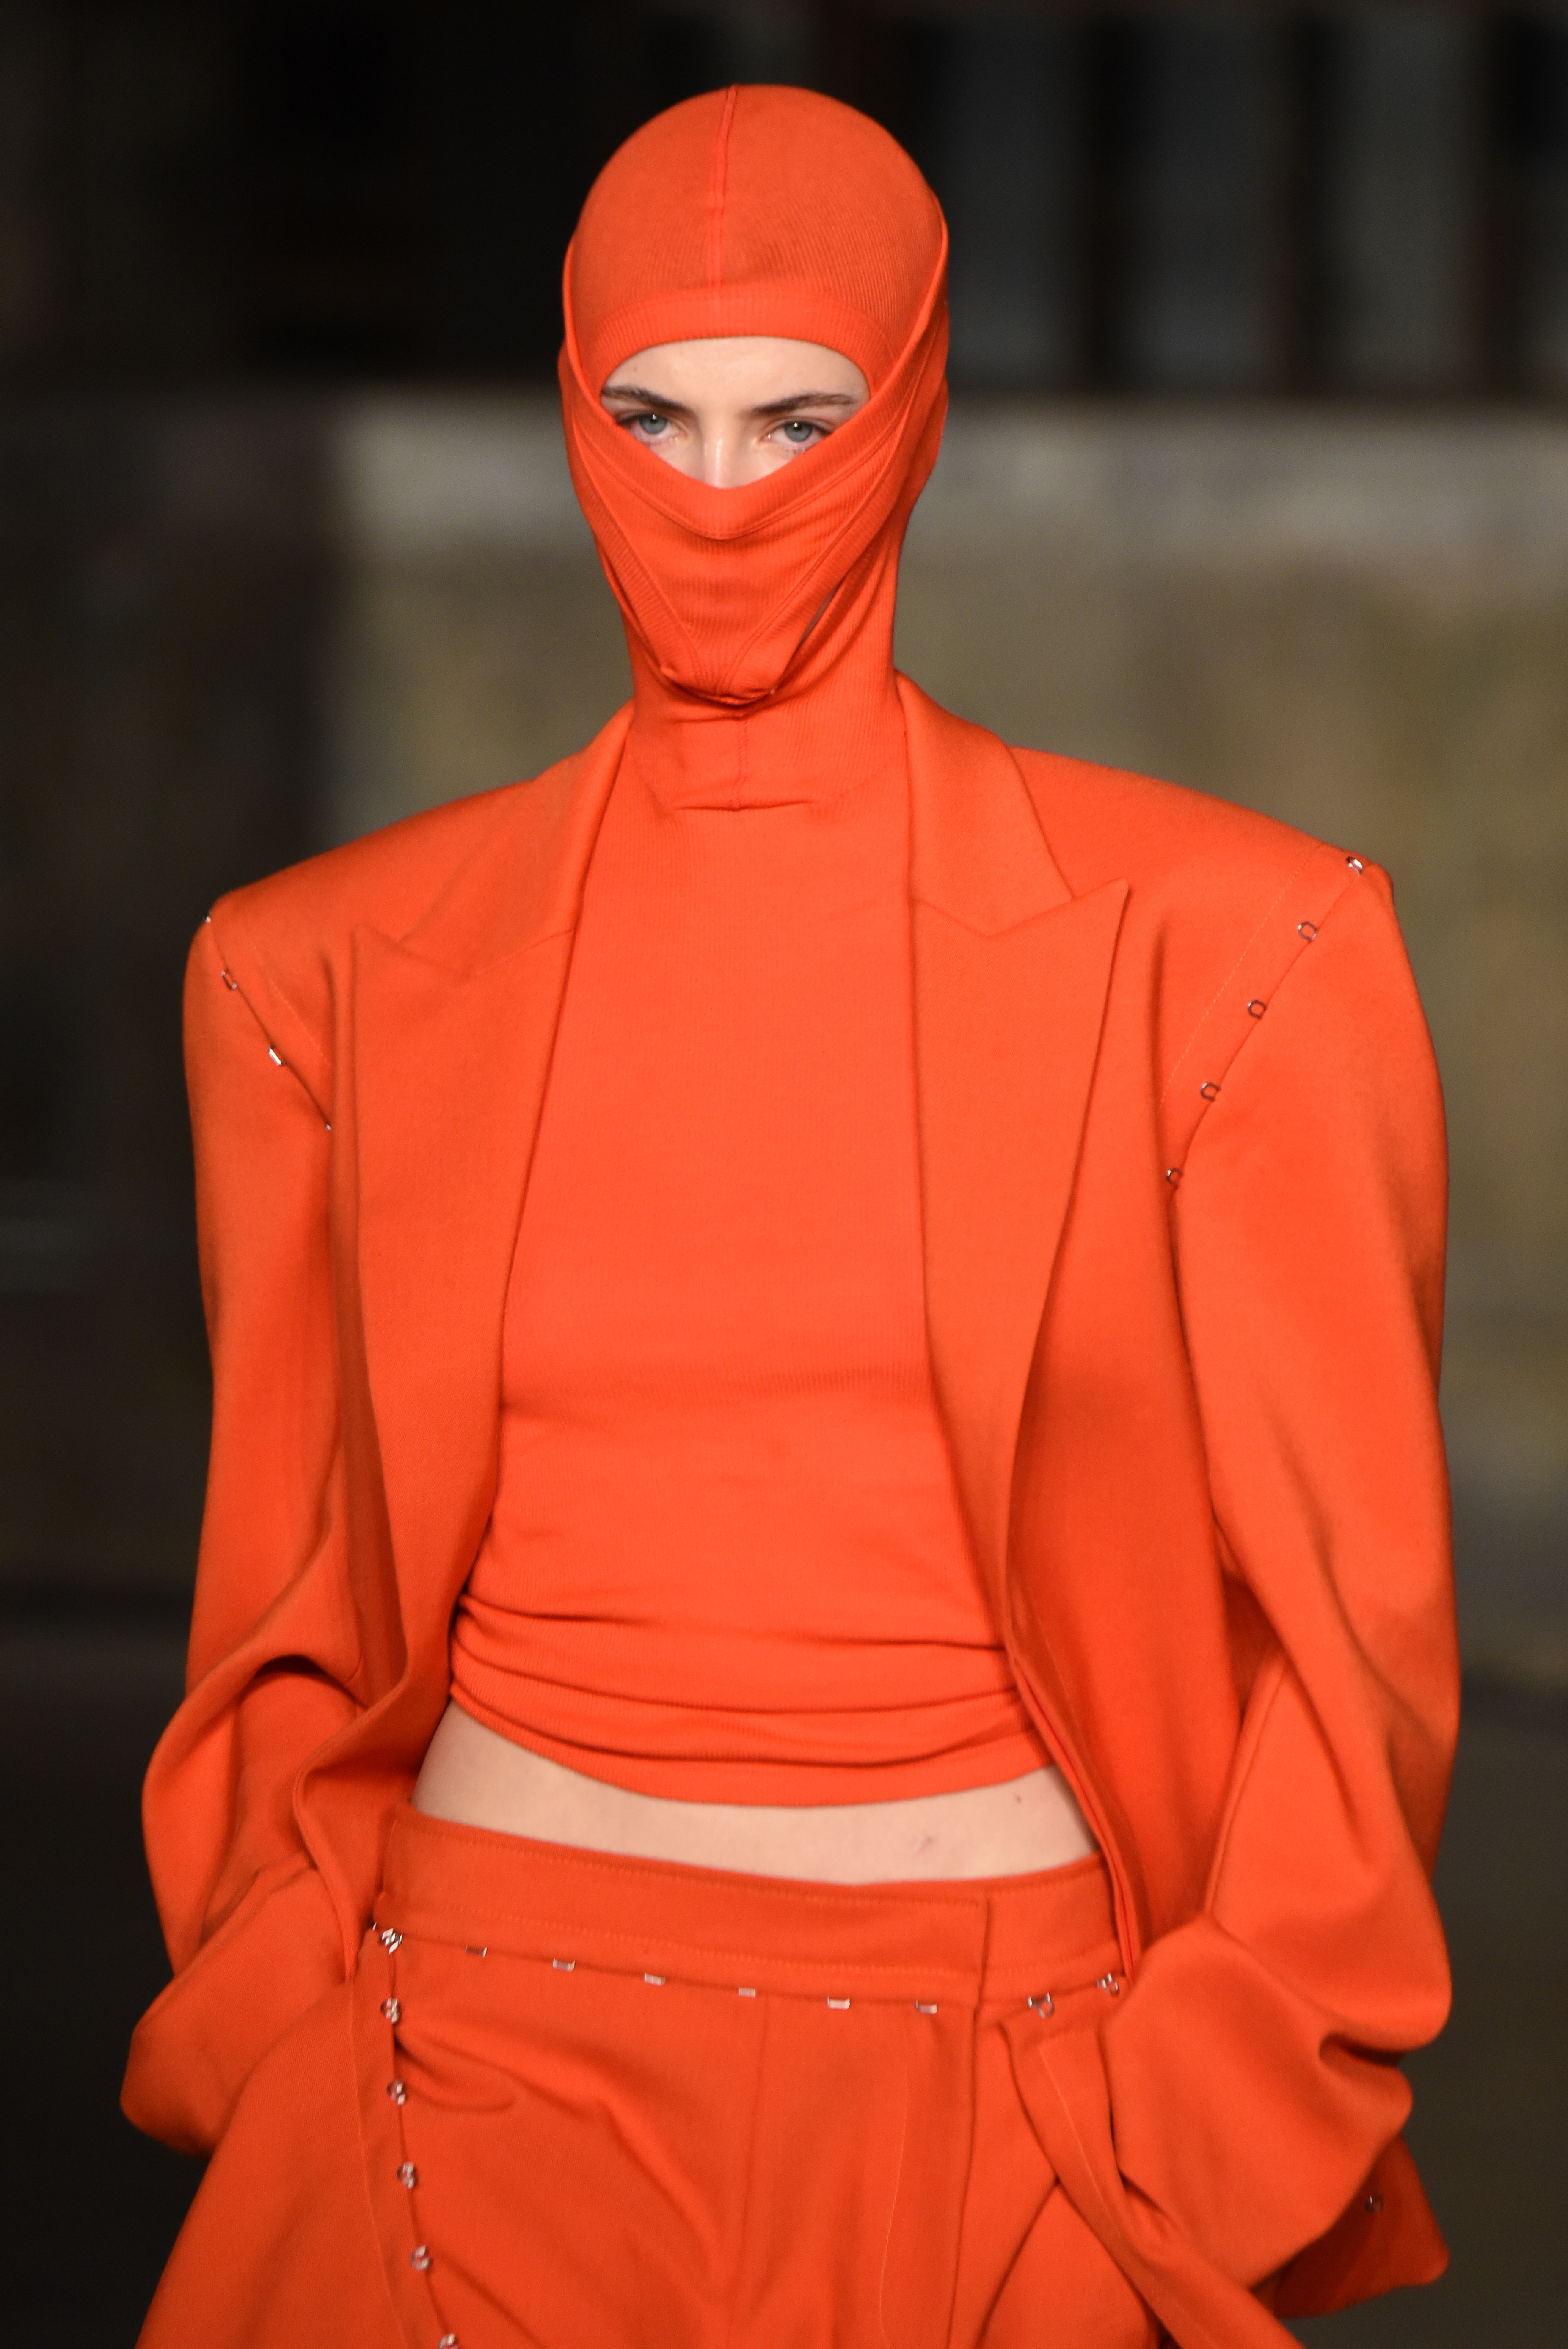 Modelo com look todo laranja e balaclava em Desfile de Dion Lee na semana de moda de Nova York